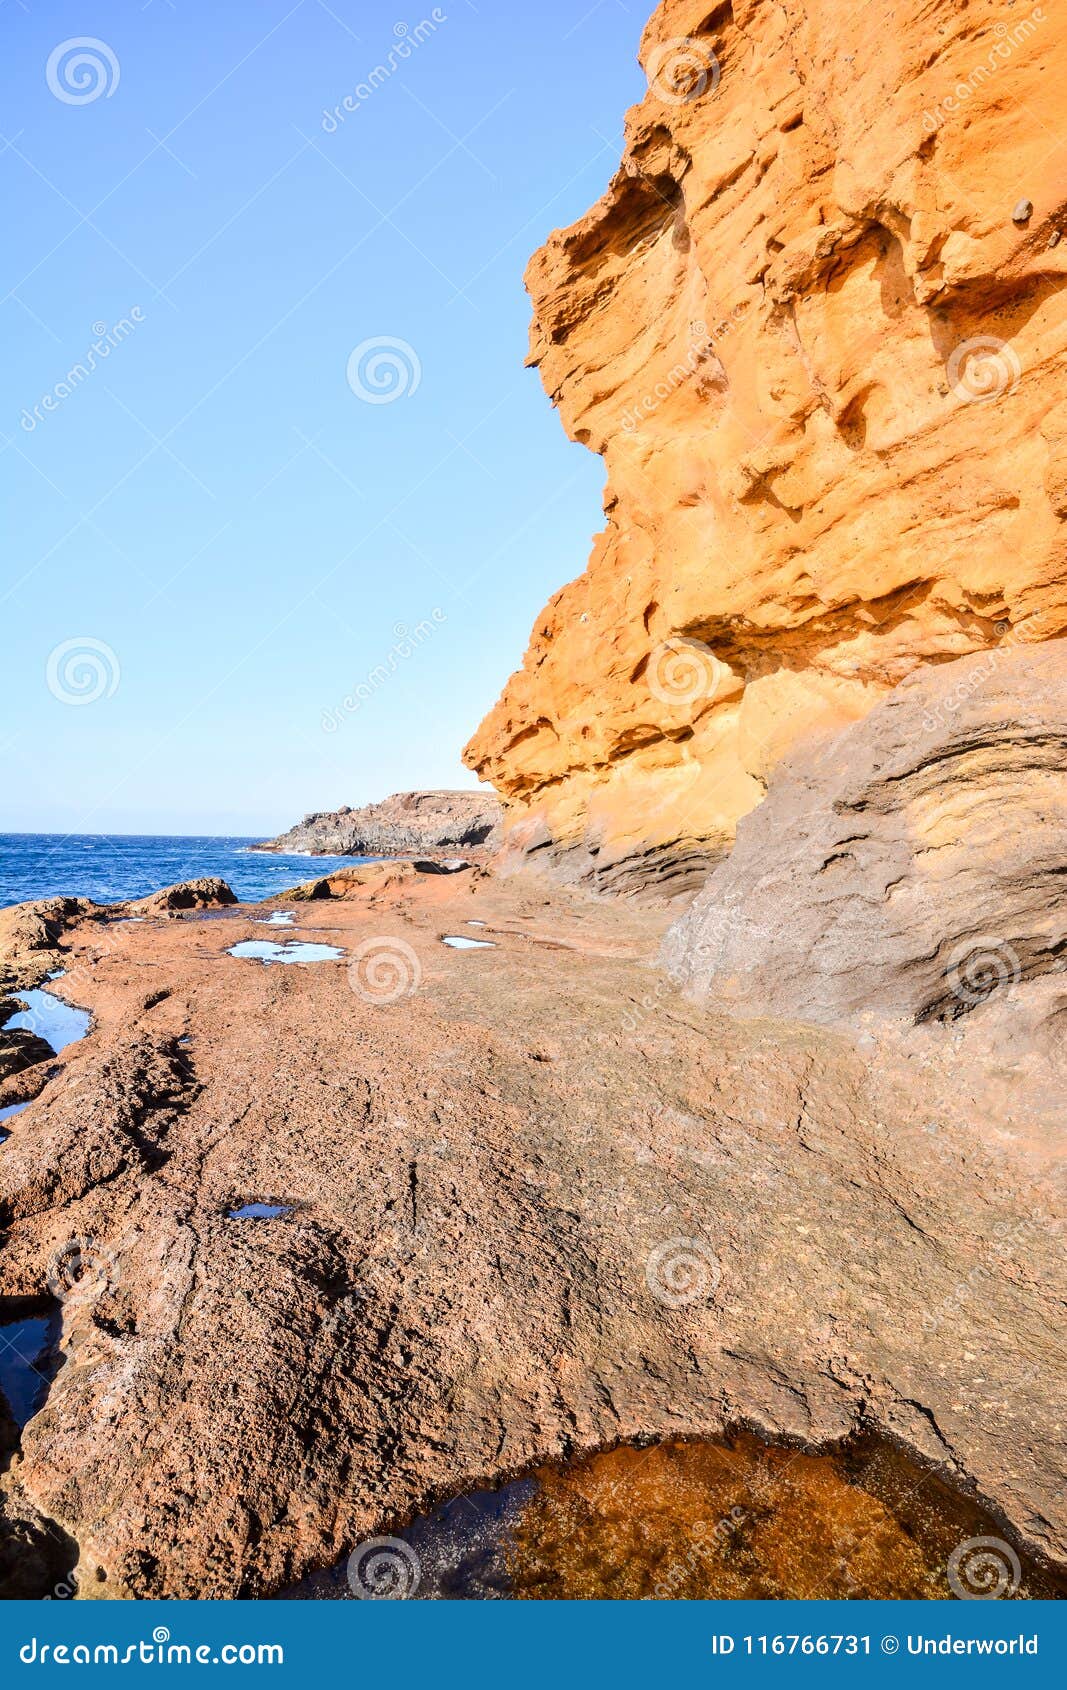 ocean coast's view montana amarilla tenerife